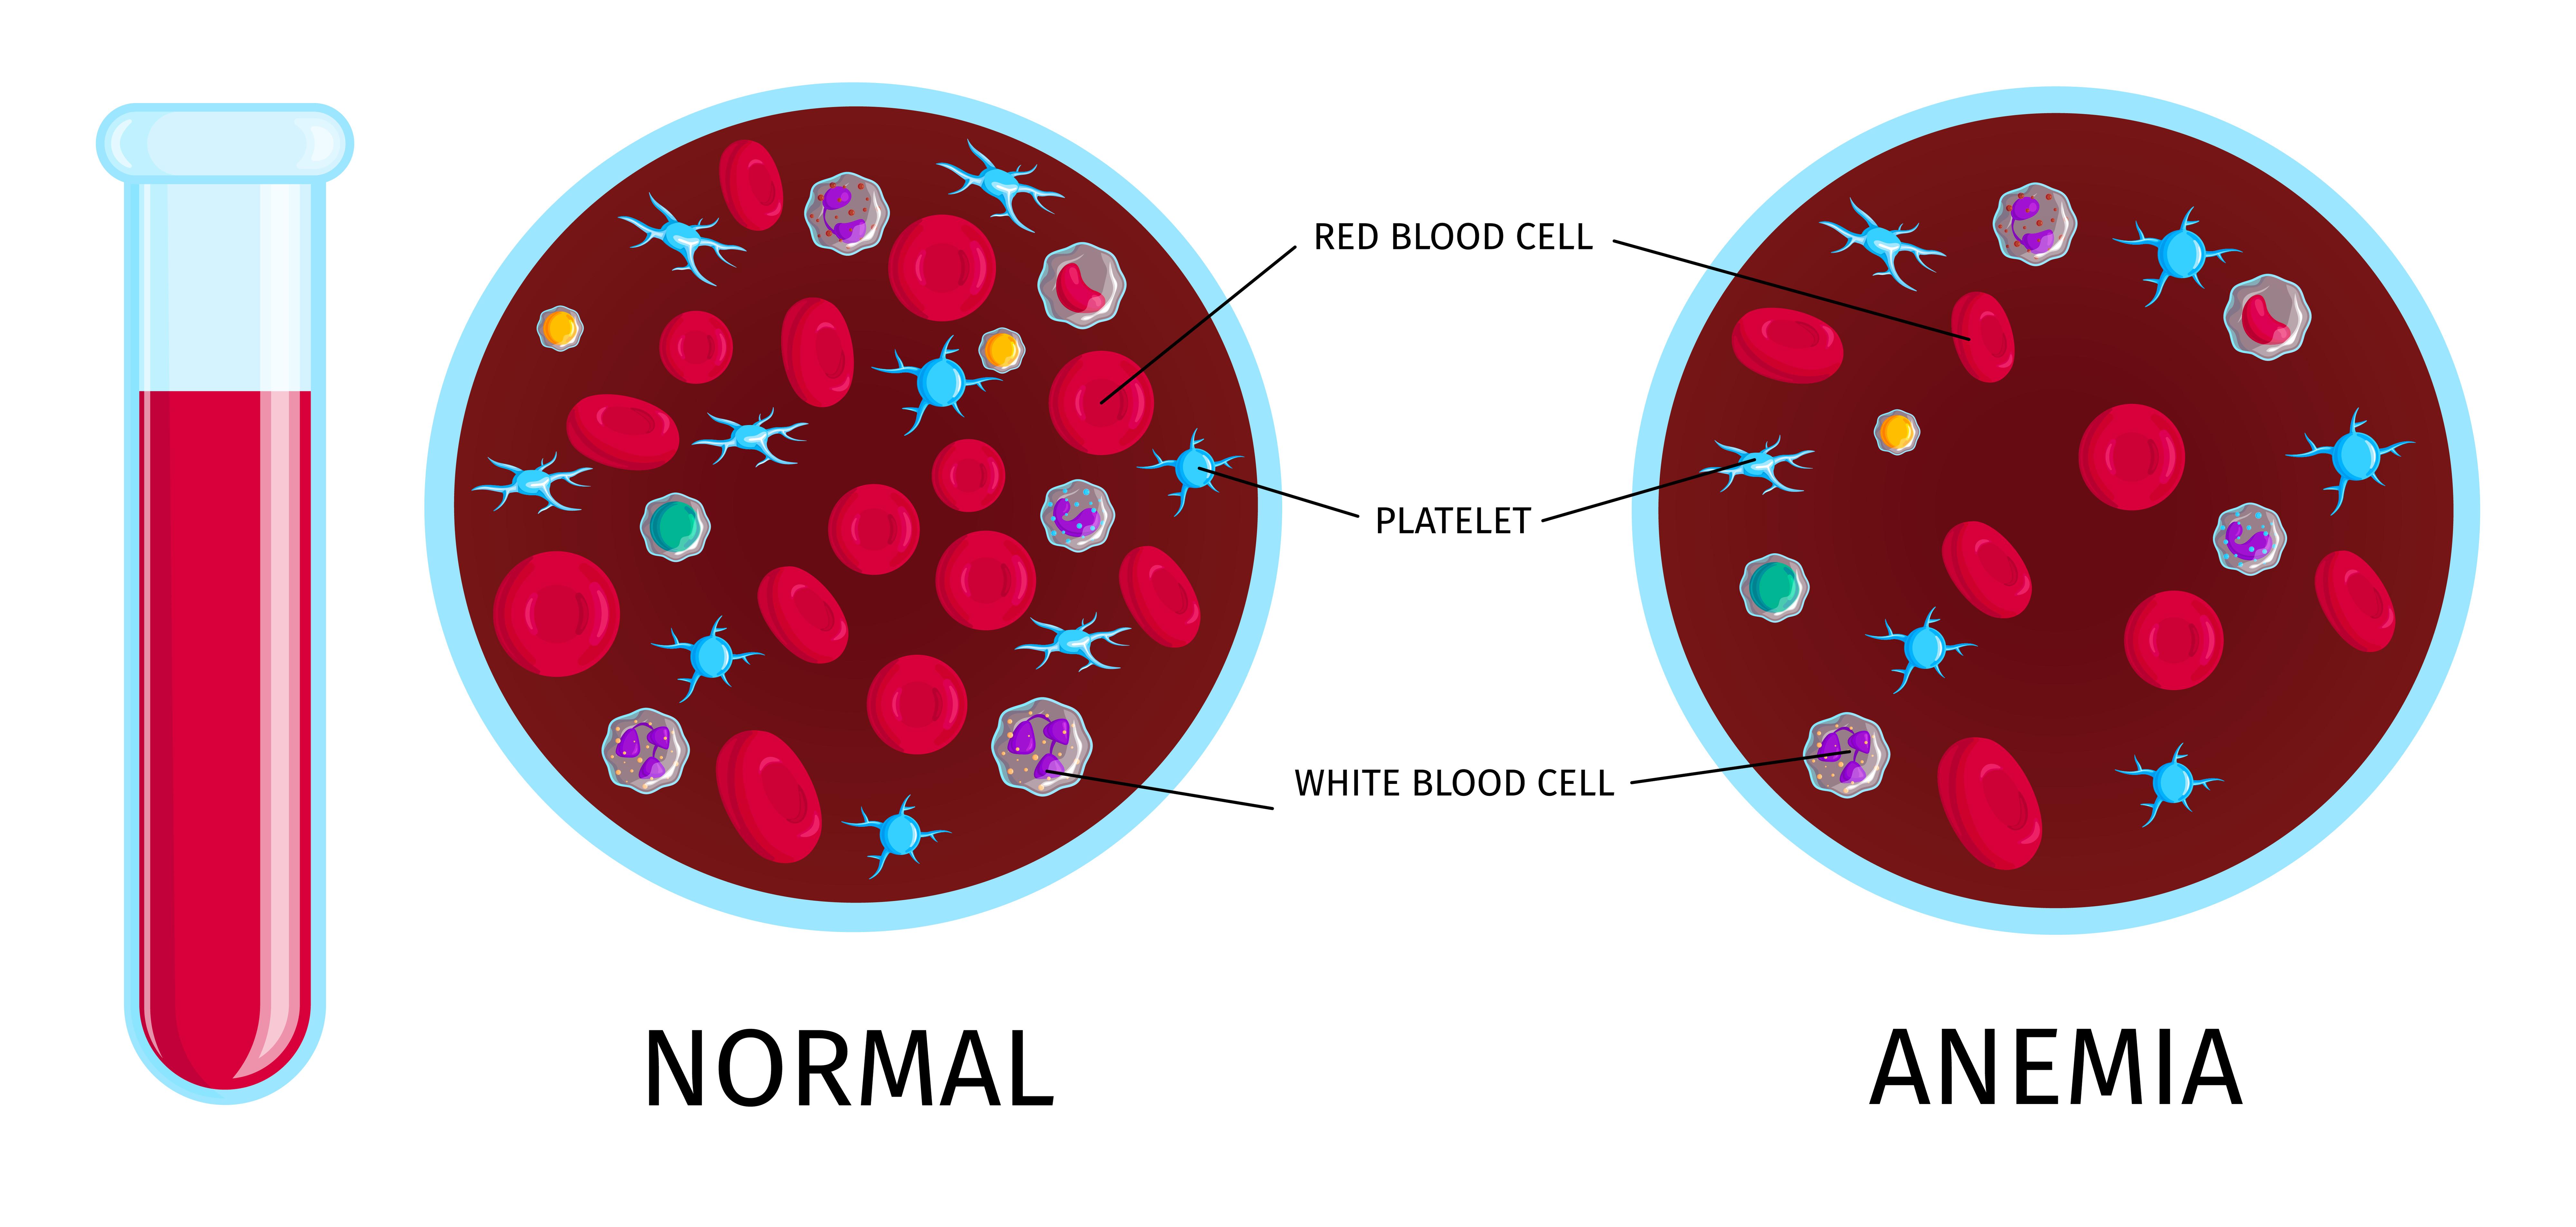 Se muestran dos imágenes comparando una persona con y sin anemia